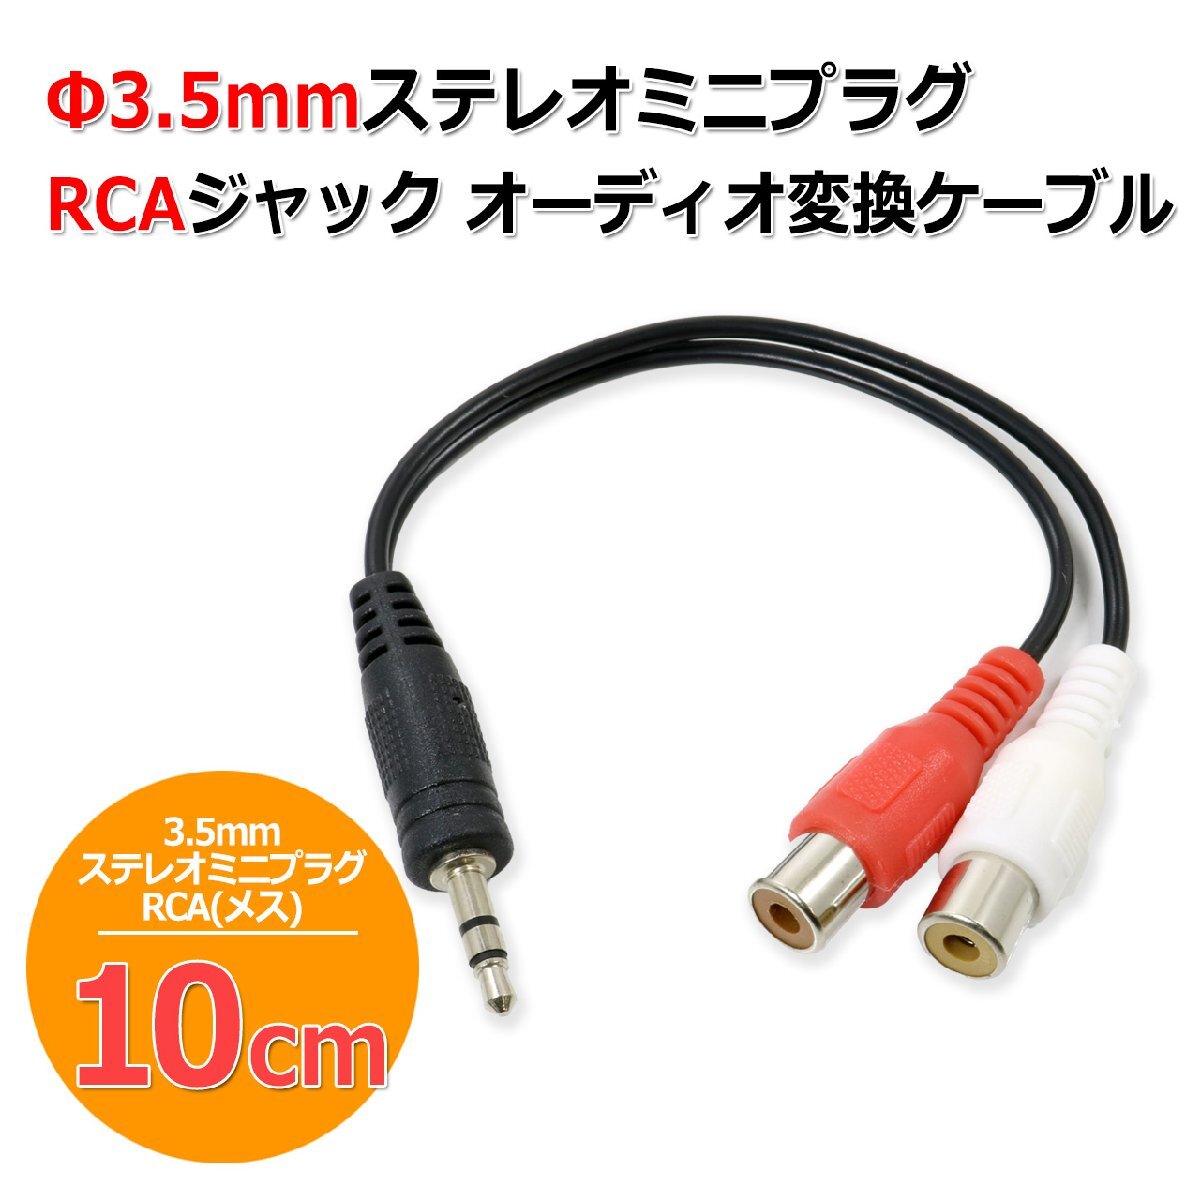 3.5mm ステレオミニプラグ - RCA ピンジャック オーディオ 変換 ケーブル 変換アダプター 10cmの画像1